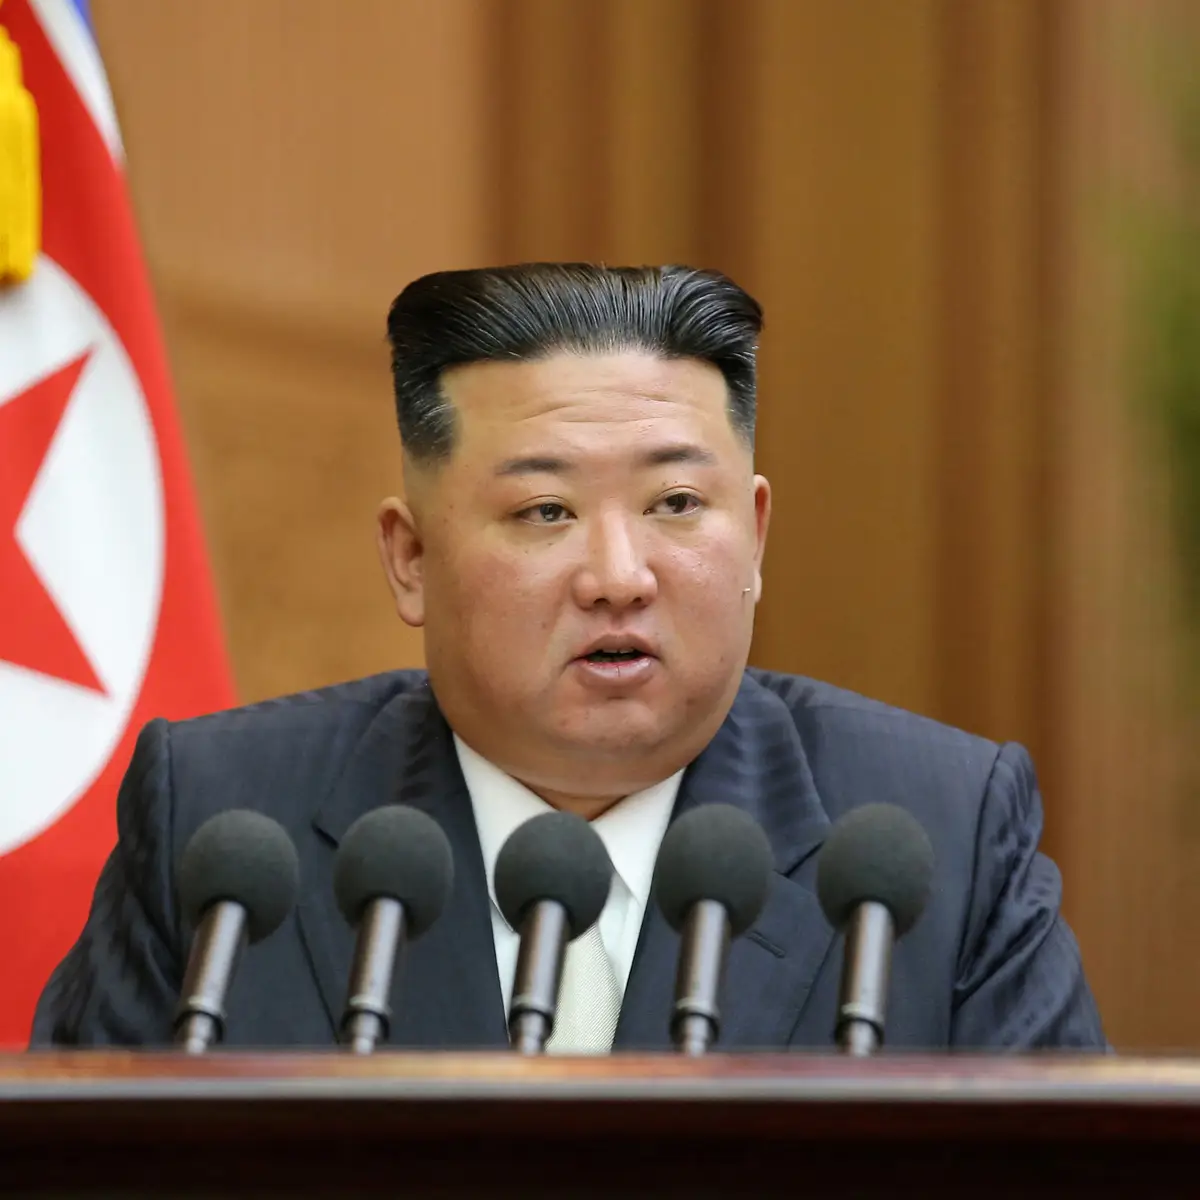 Coreia do Norte anuncia reforço de armas nucleares